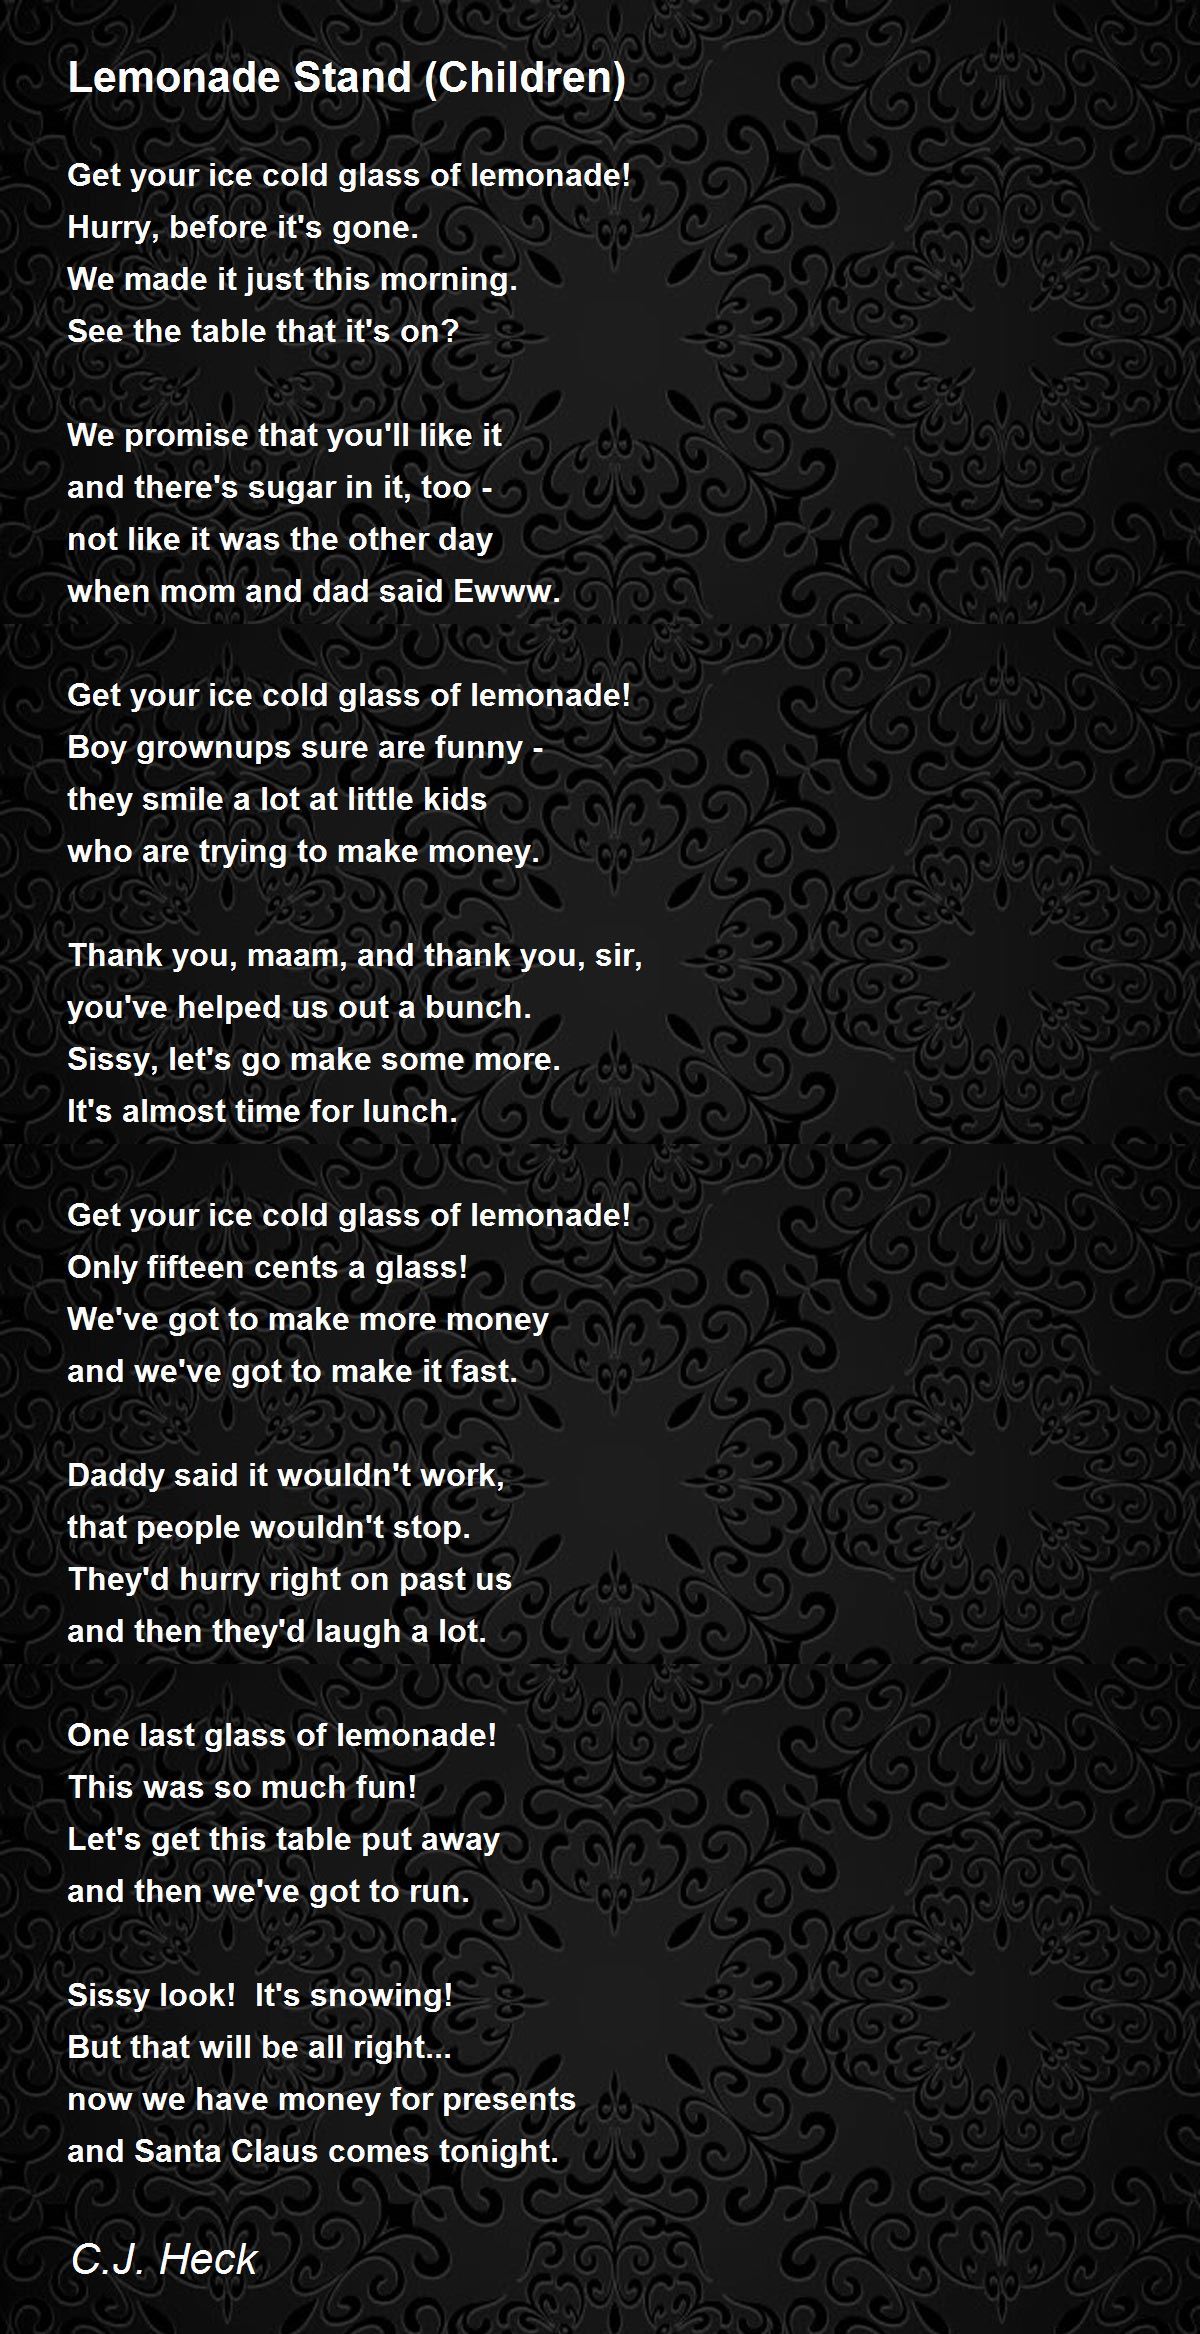 Lemonade Stand (Children) Poem by C.J. Heck - Poem Hunter